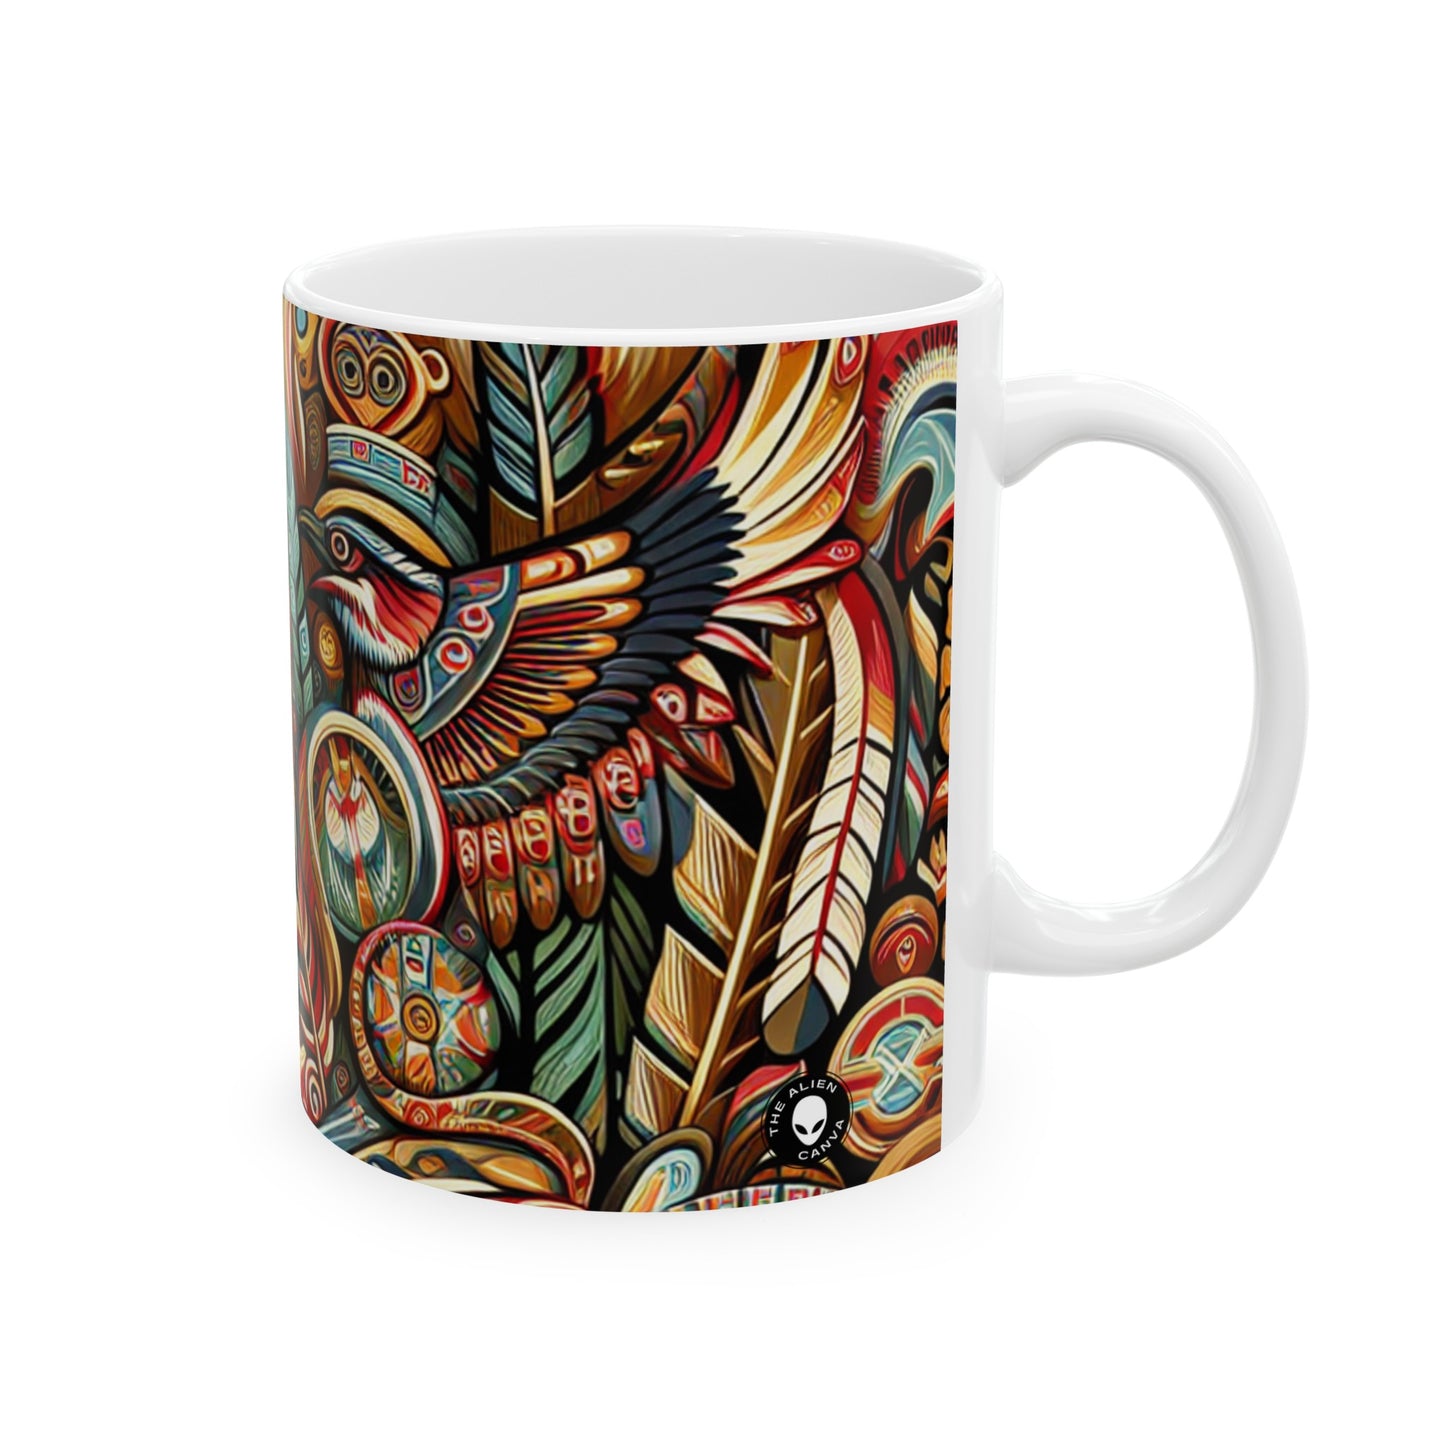 "Sacred Southwest: A Celebration of Indigenous Art" - The Alien Ceramic Mug 11oz Indigenous Art